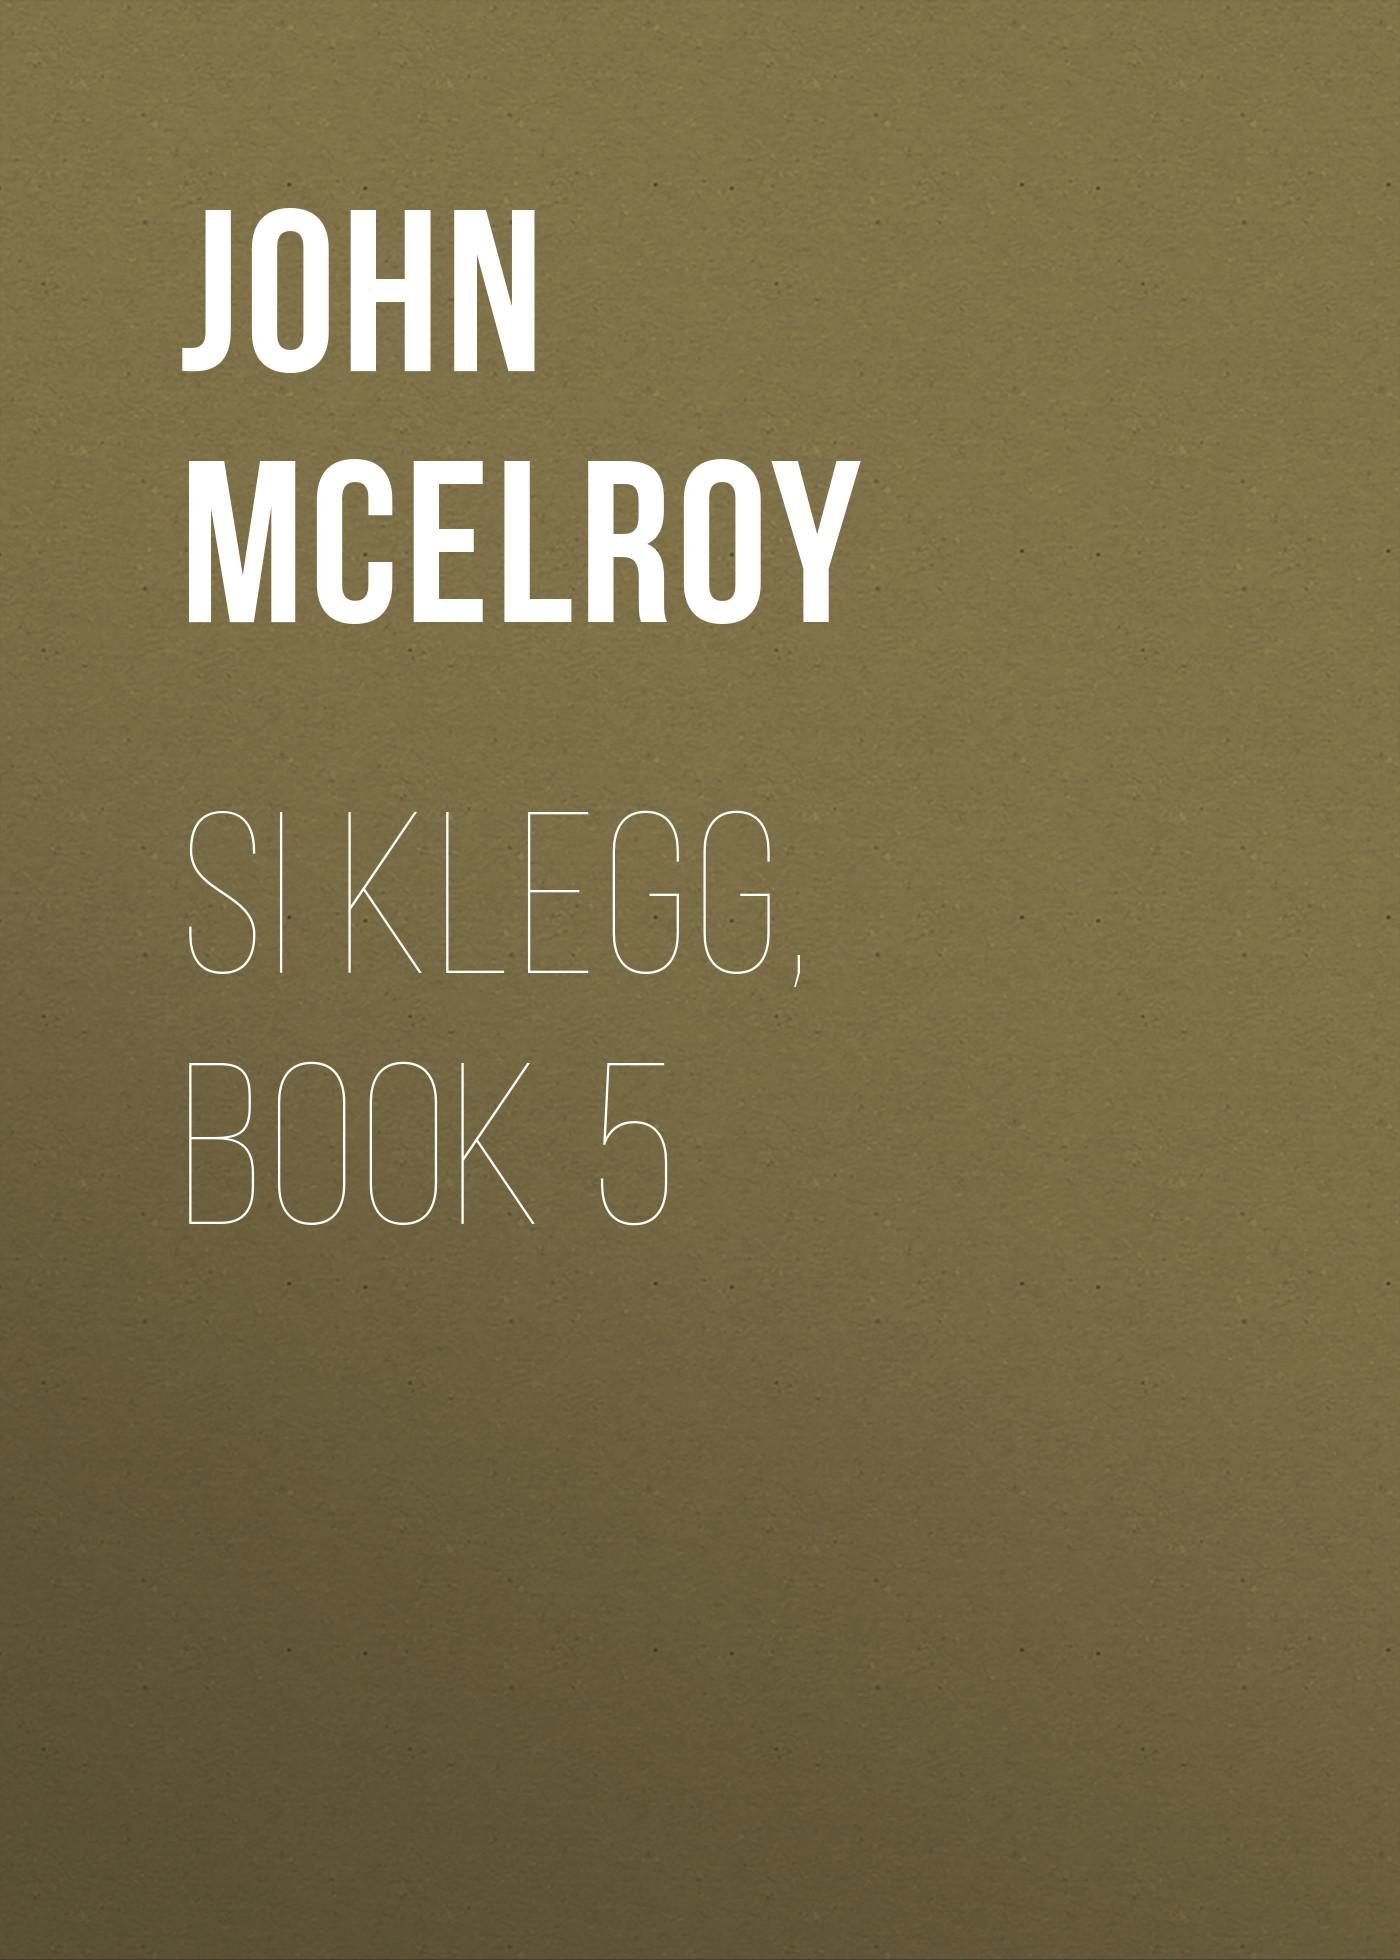 Книга Si Klegg, Book 5 из серии , созданная John McElroy, может относится к жанру Зарубежная классика, История, Зарубежная образовательная литература, Зарубежная старинная литература. Стоимость электронной книги Si Klegg, Book 5 с идентификатором 36324260 составляет 0 руб.